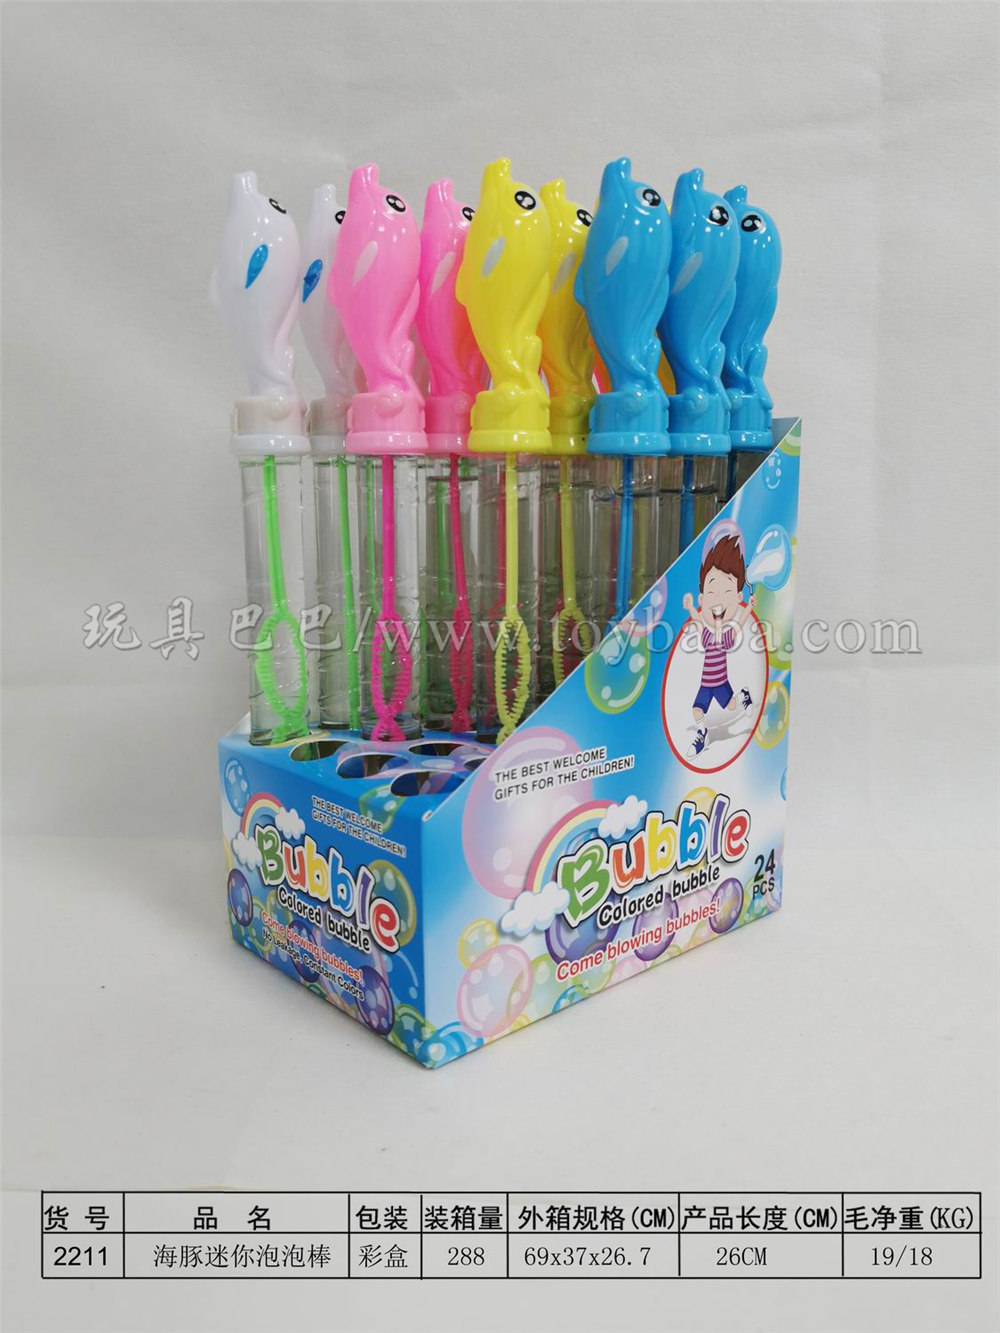 26cm dolphin bubble stick 24pcs / box (4 colors)